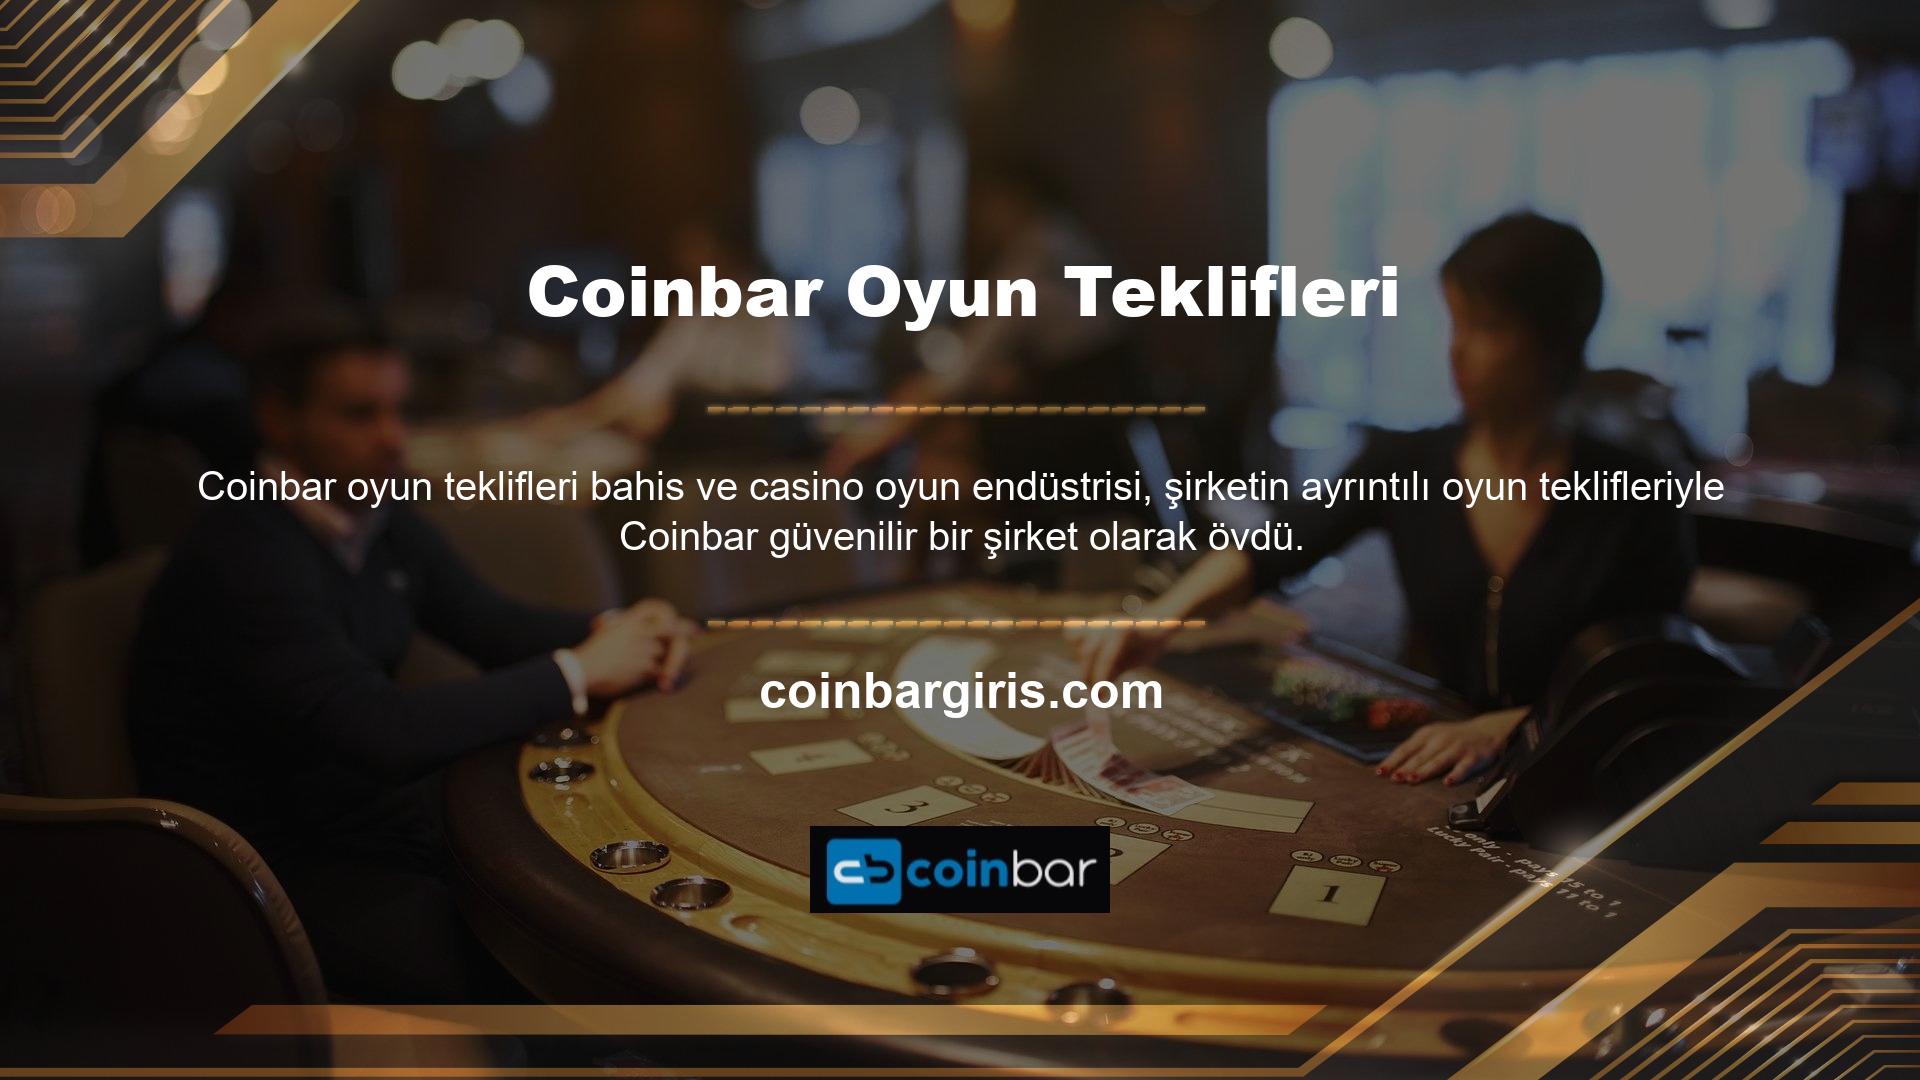 Oyun bilgileri açısından Coinbar web sitesi şüphesiz en çok tercih edilen poker bölümüdür